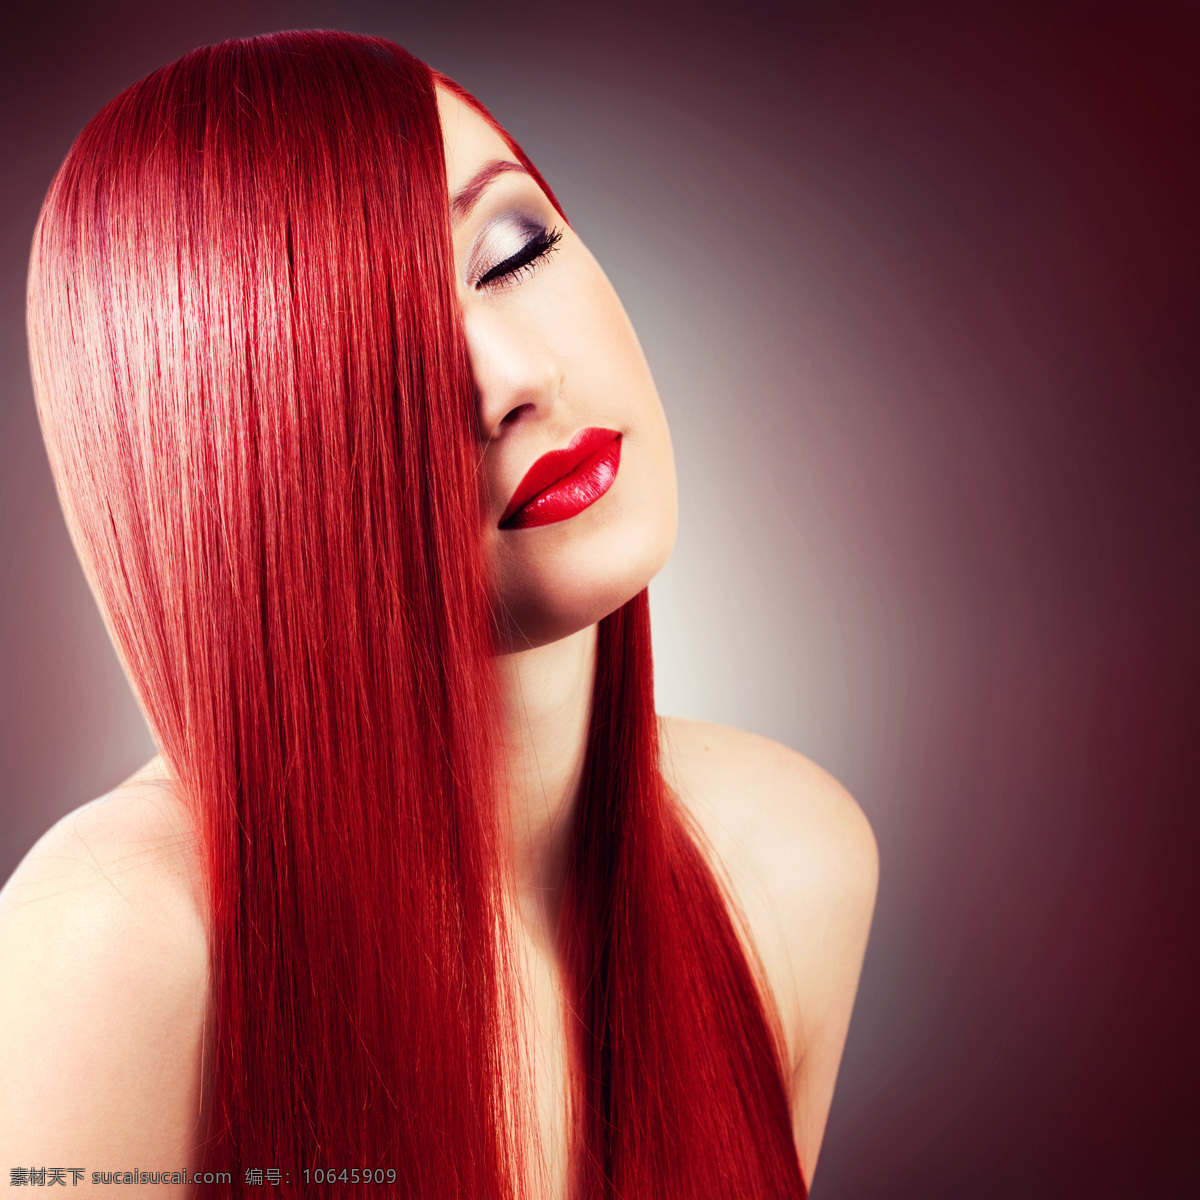 红 发红 唇 美女图片 红发 红唇 美发 美女 女人 外国美女 美女模特 外国人物 人物图片